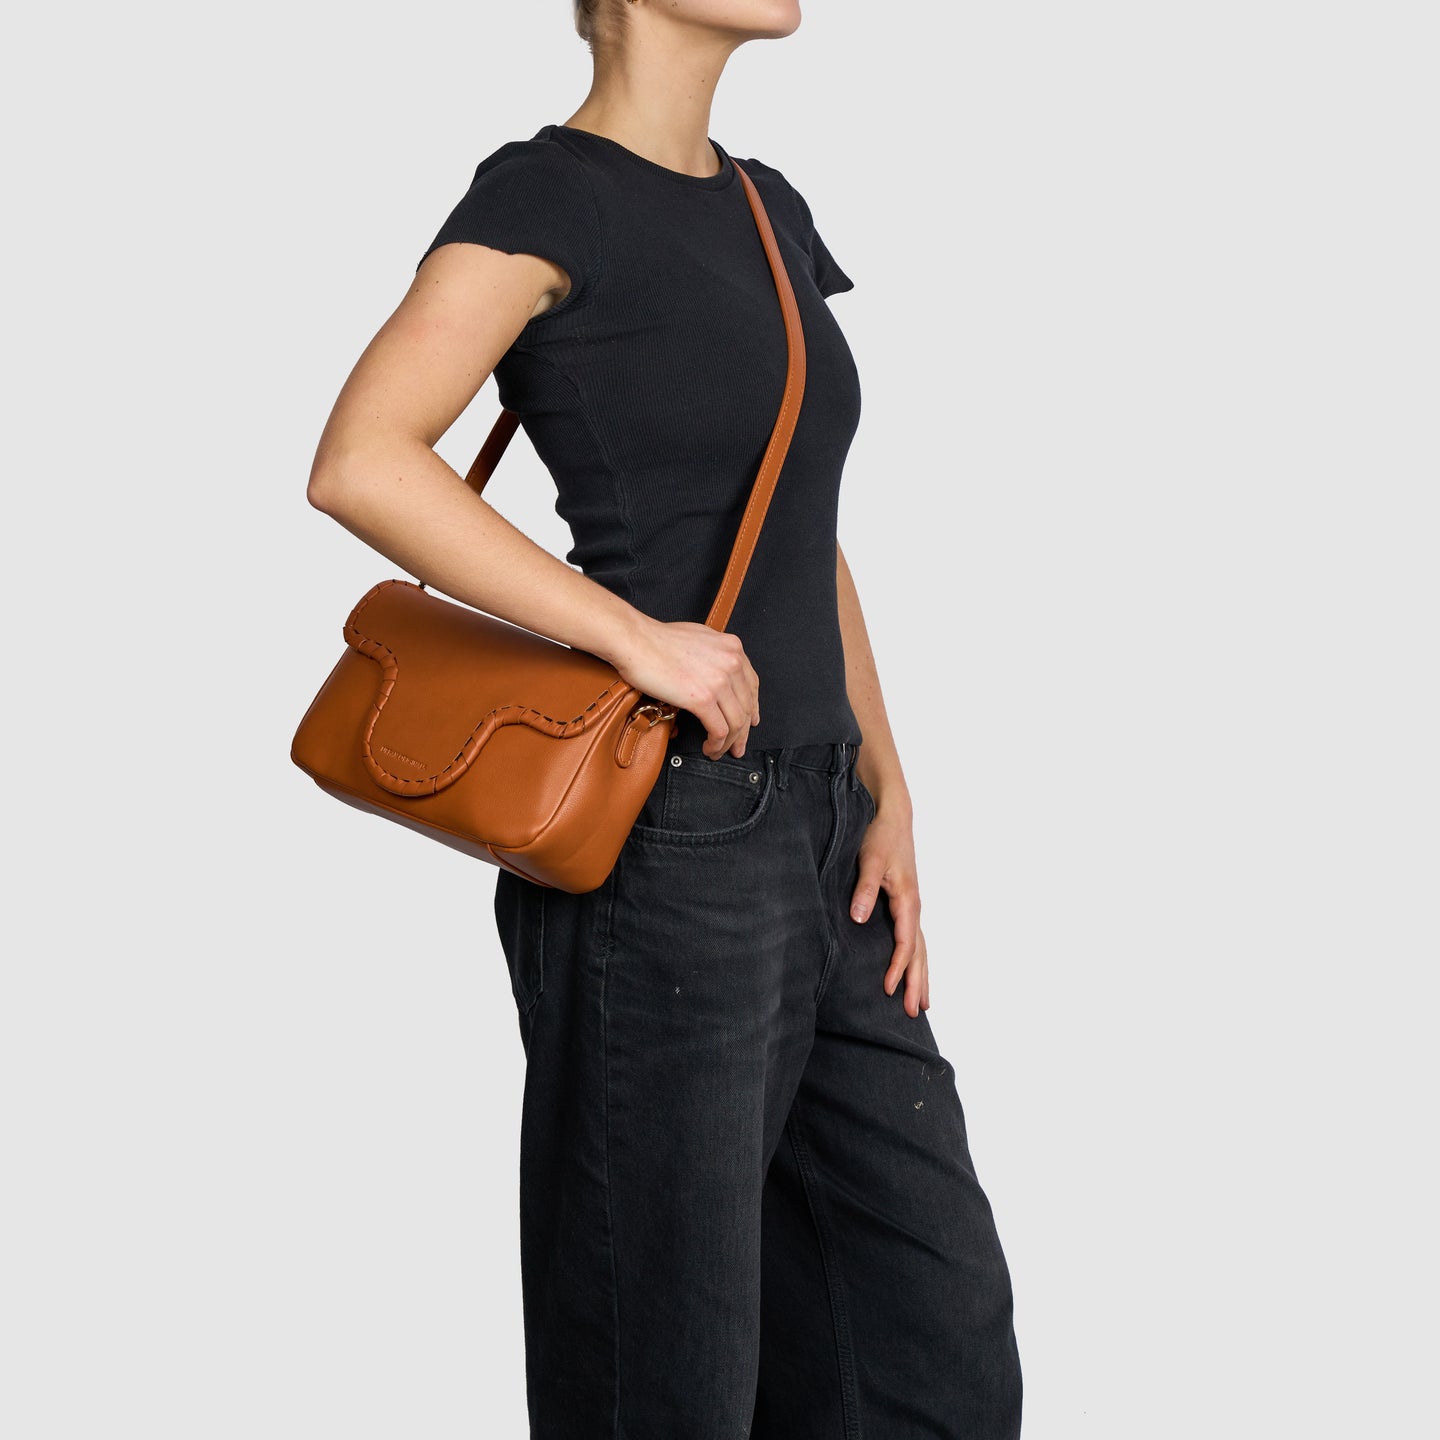 Urban Outfitters Uo Jessa Straw Crossbody Bag